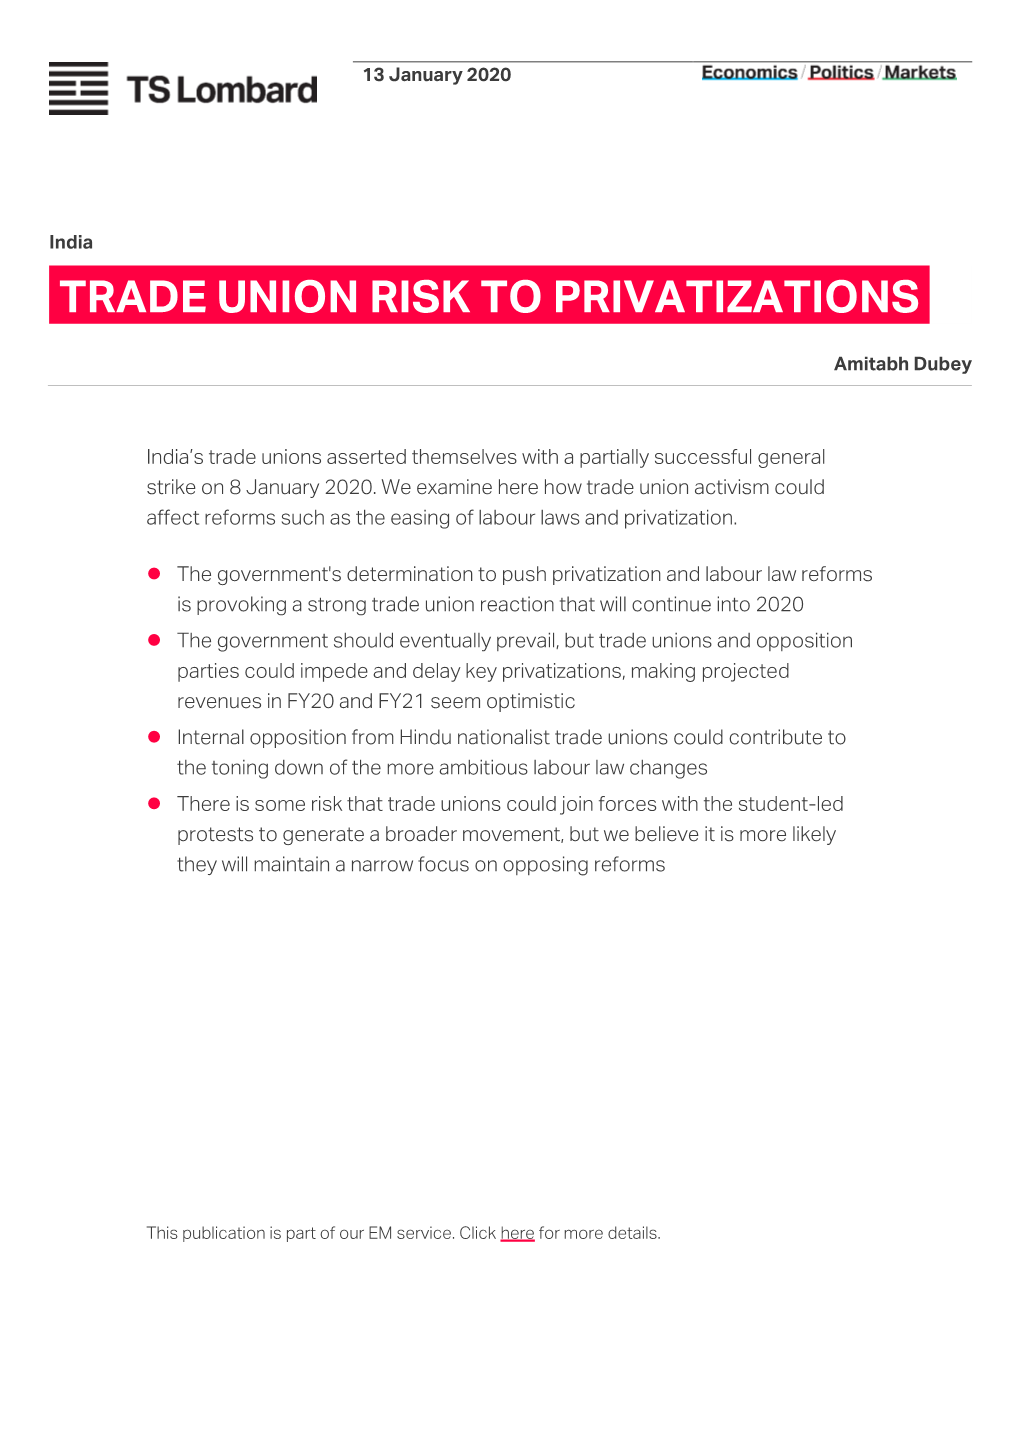 Trade Union Risk to Privatizations